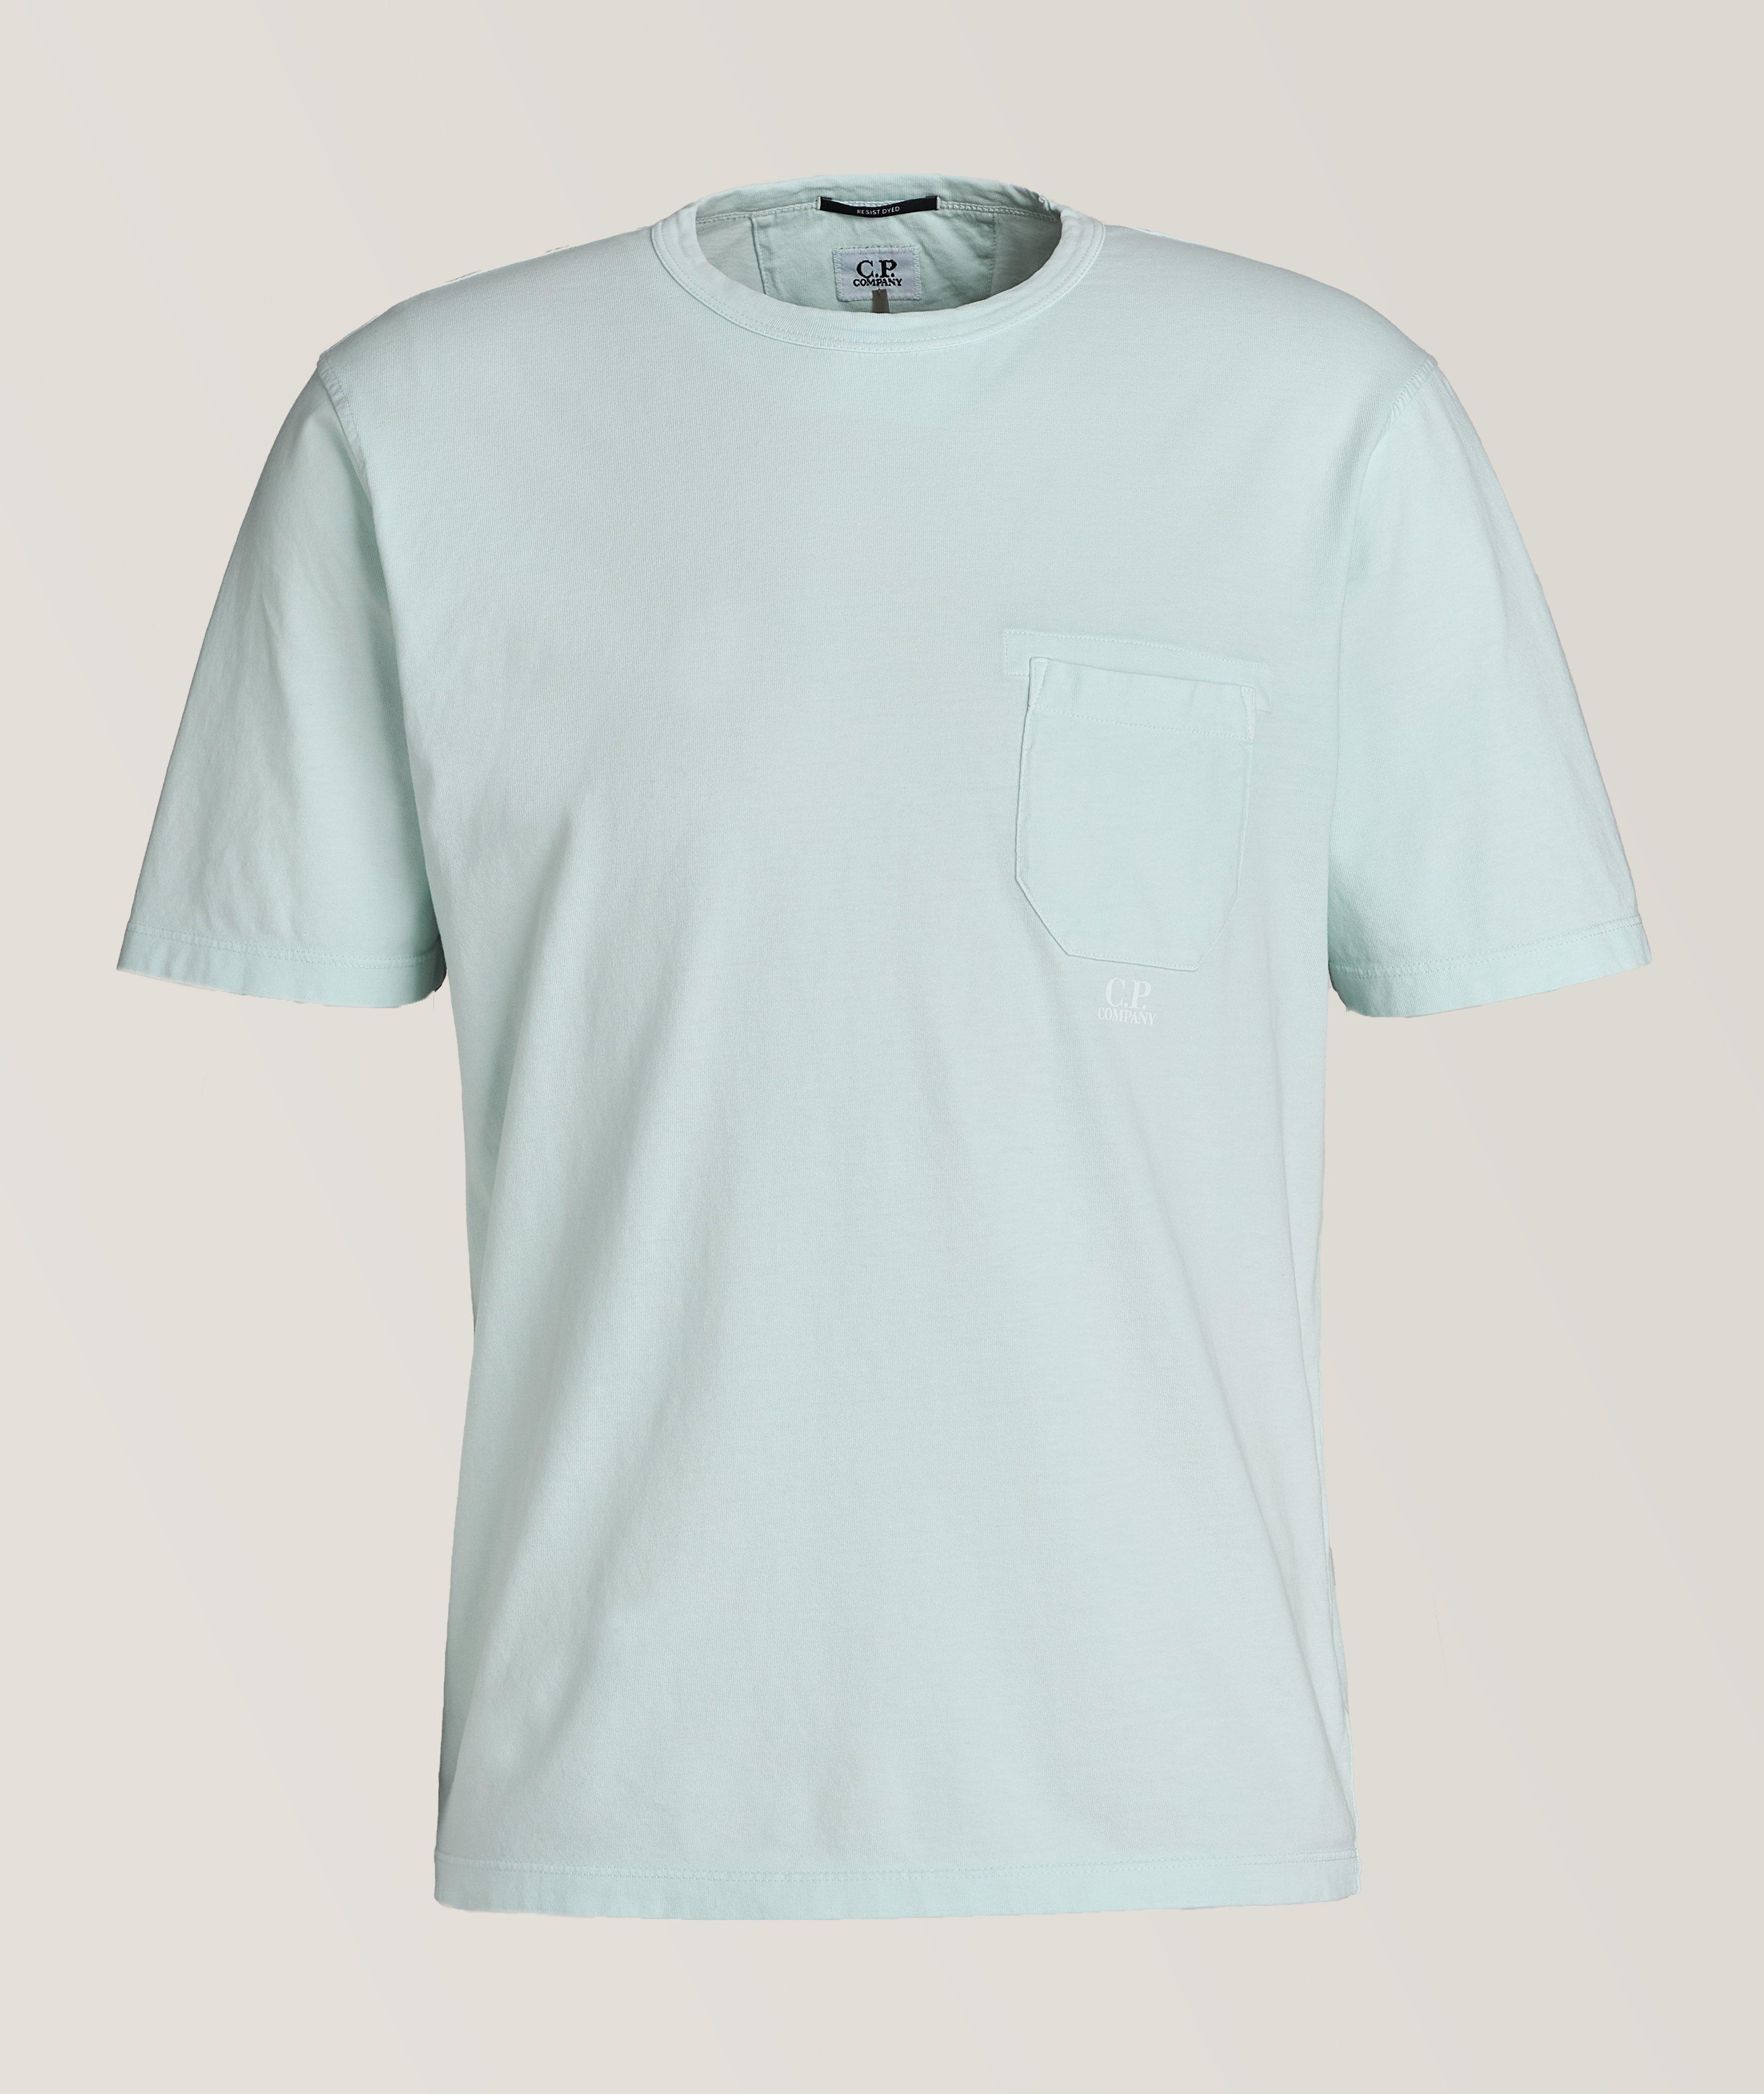 T-shirt en coton teint avec réserve image 0